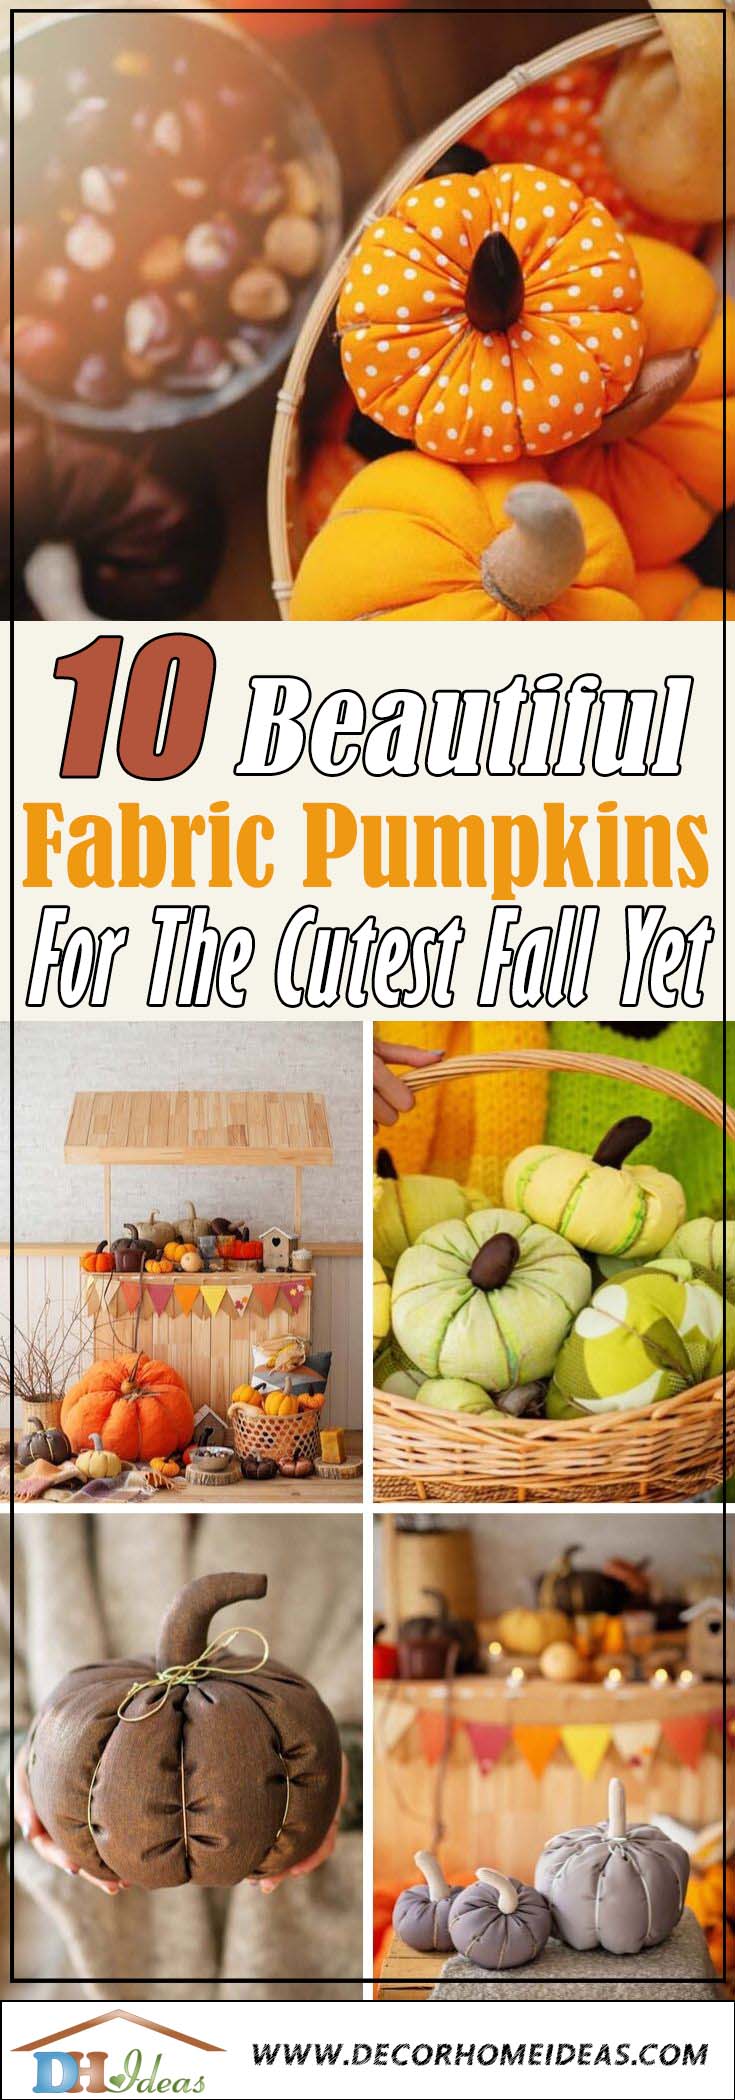 Best Fabric Pumpkins #fabric #pumpkin #falldecor #decorhomeideas